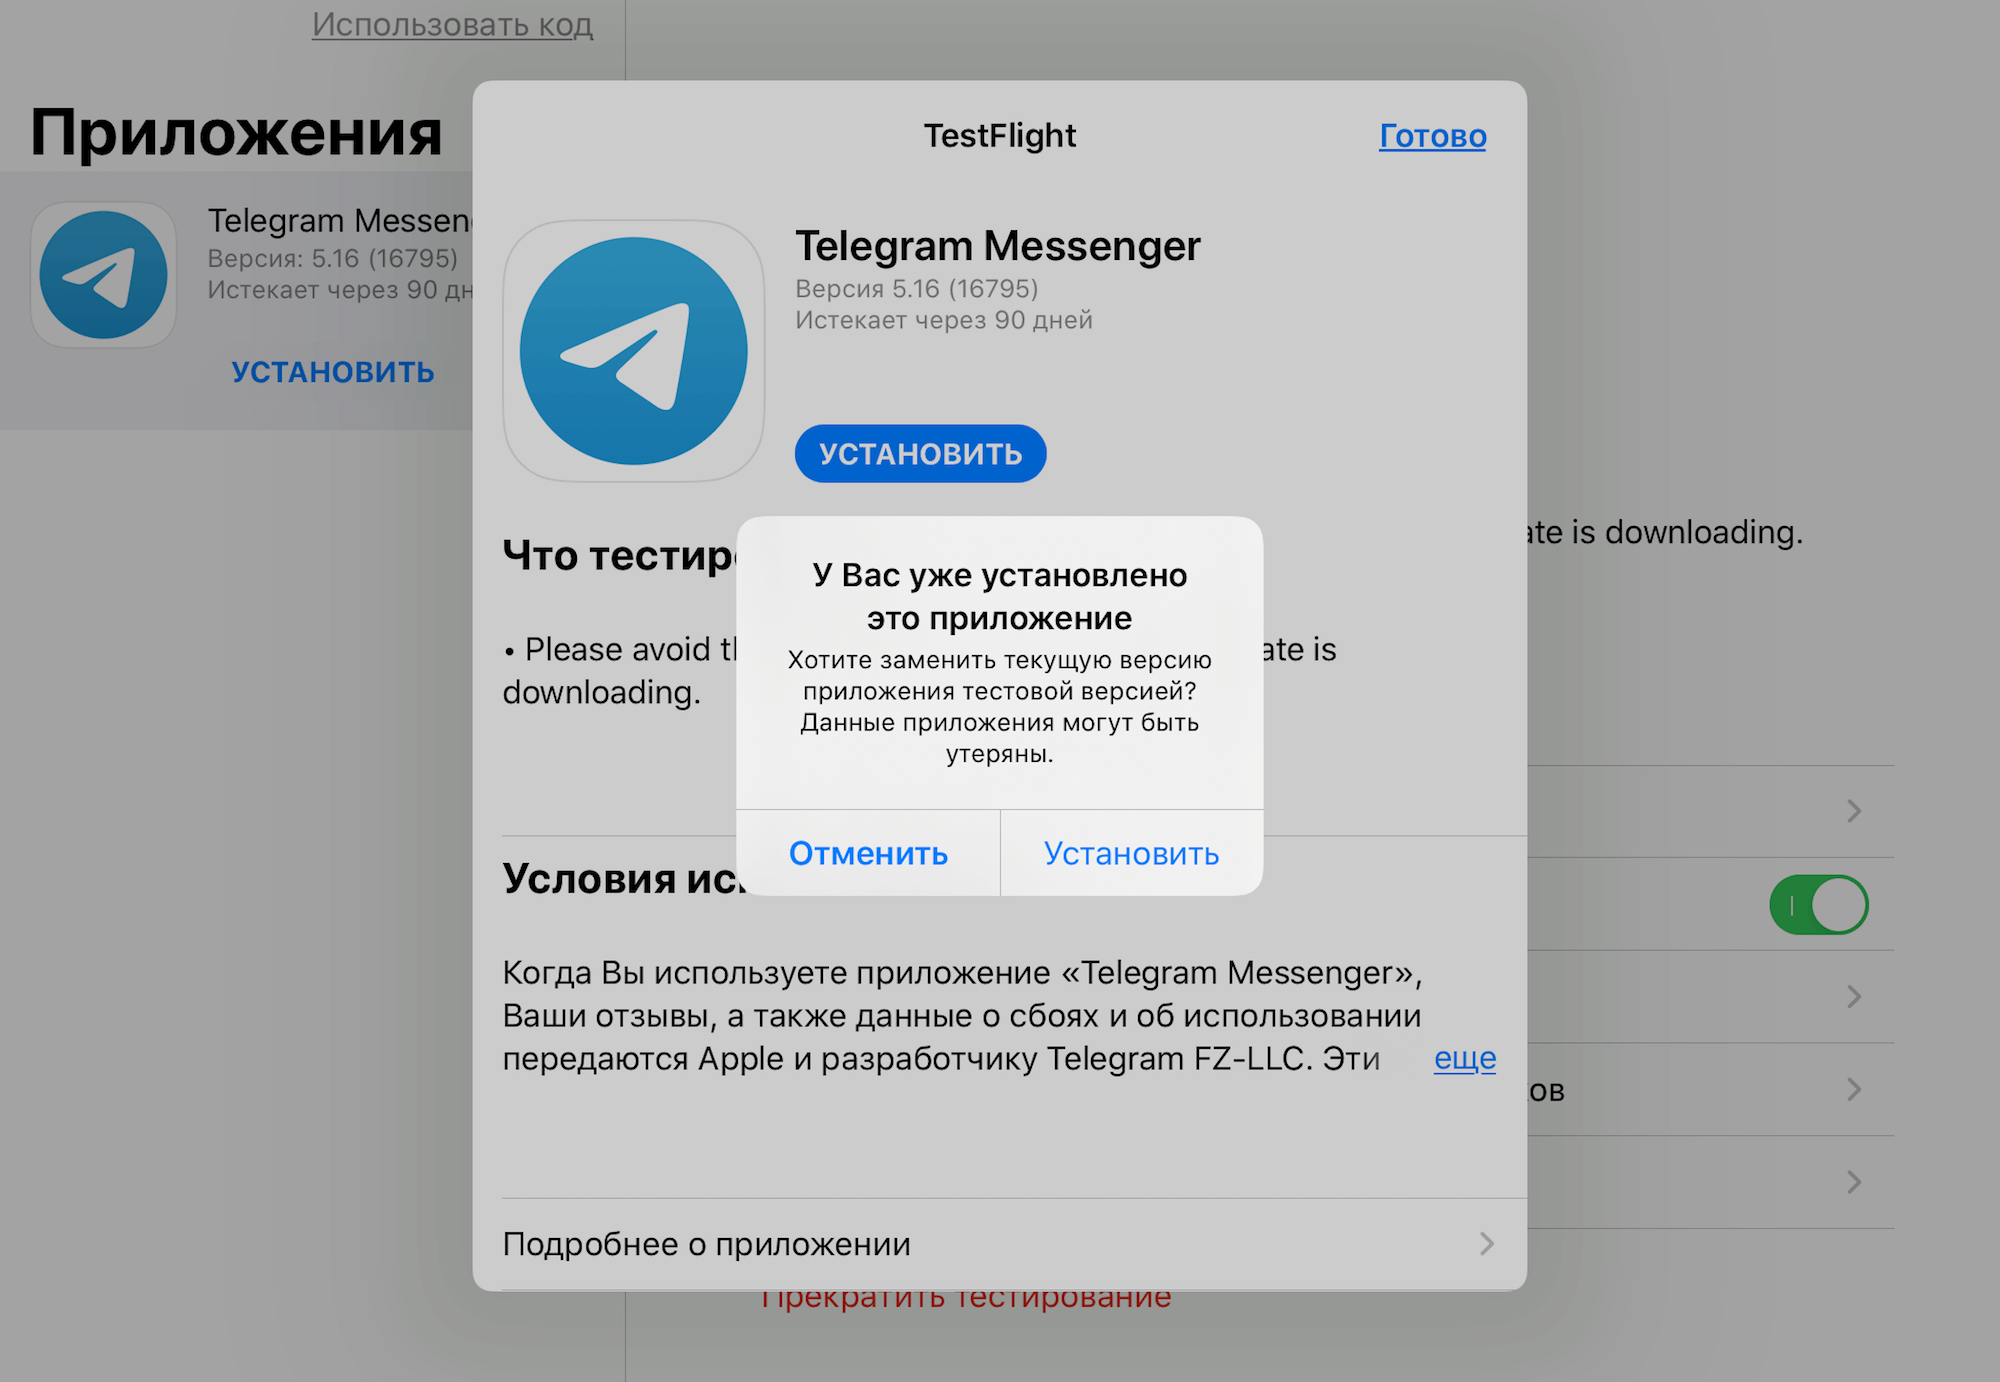 Истекшая ссылка срок действия ссылки истек телеграм